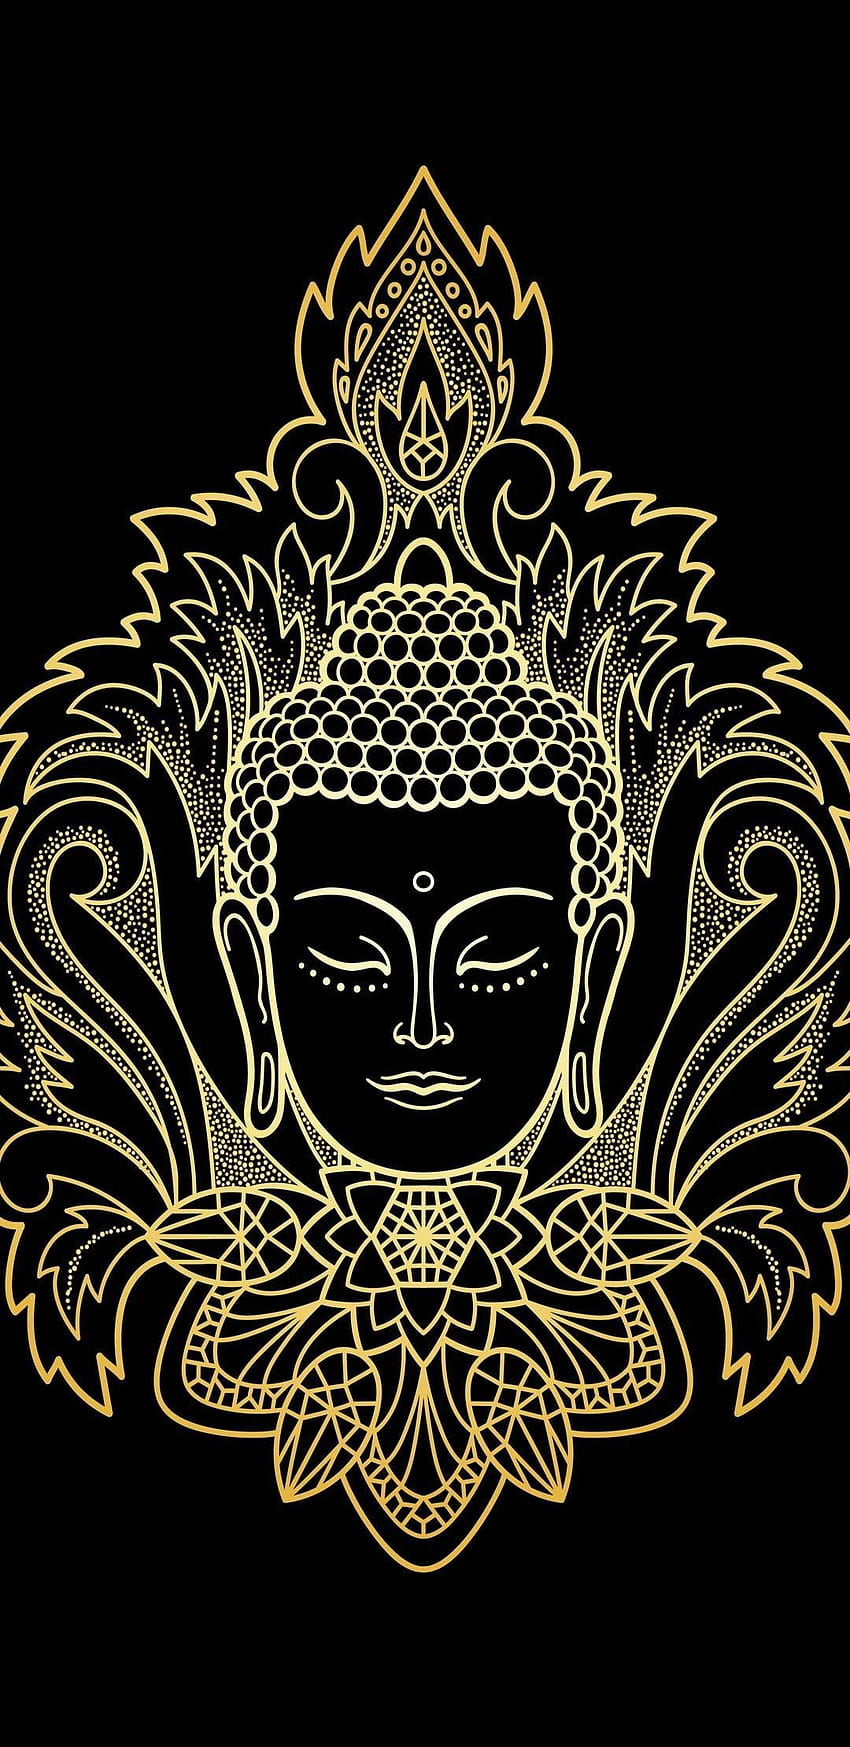 HD wallpaper: Buddha Vector, Gautama Buddha poster, God, Lord Buddha,  vector drawing | Wallpaper Flare